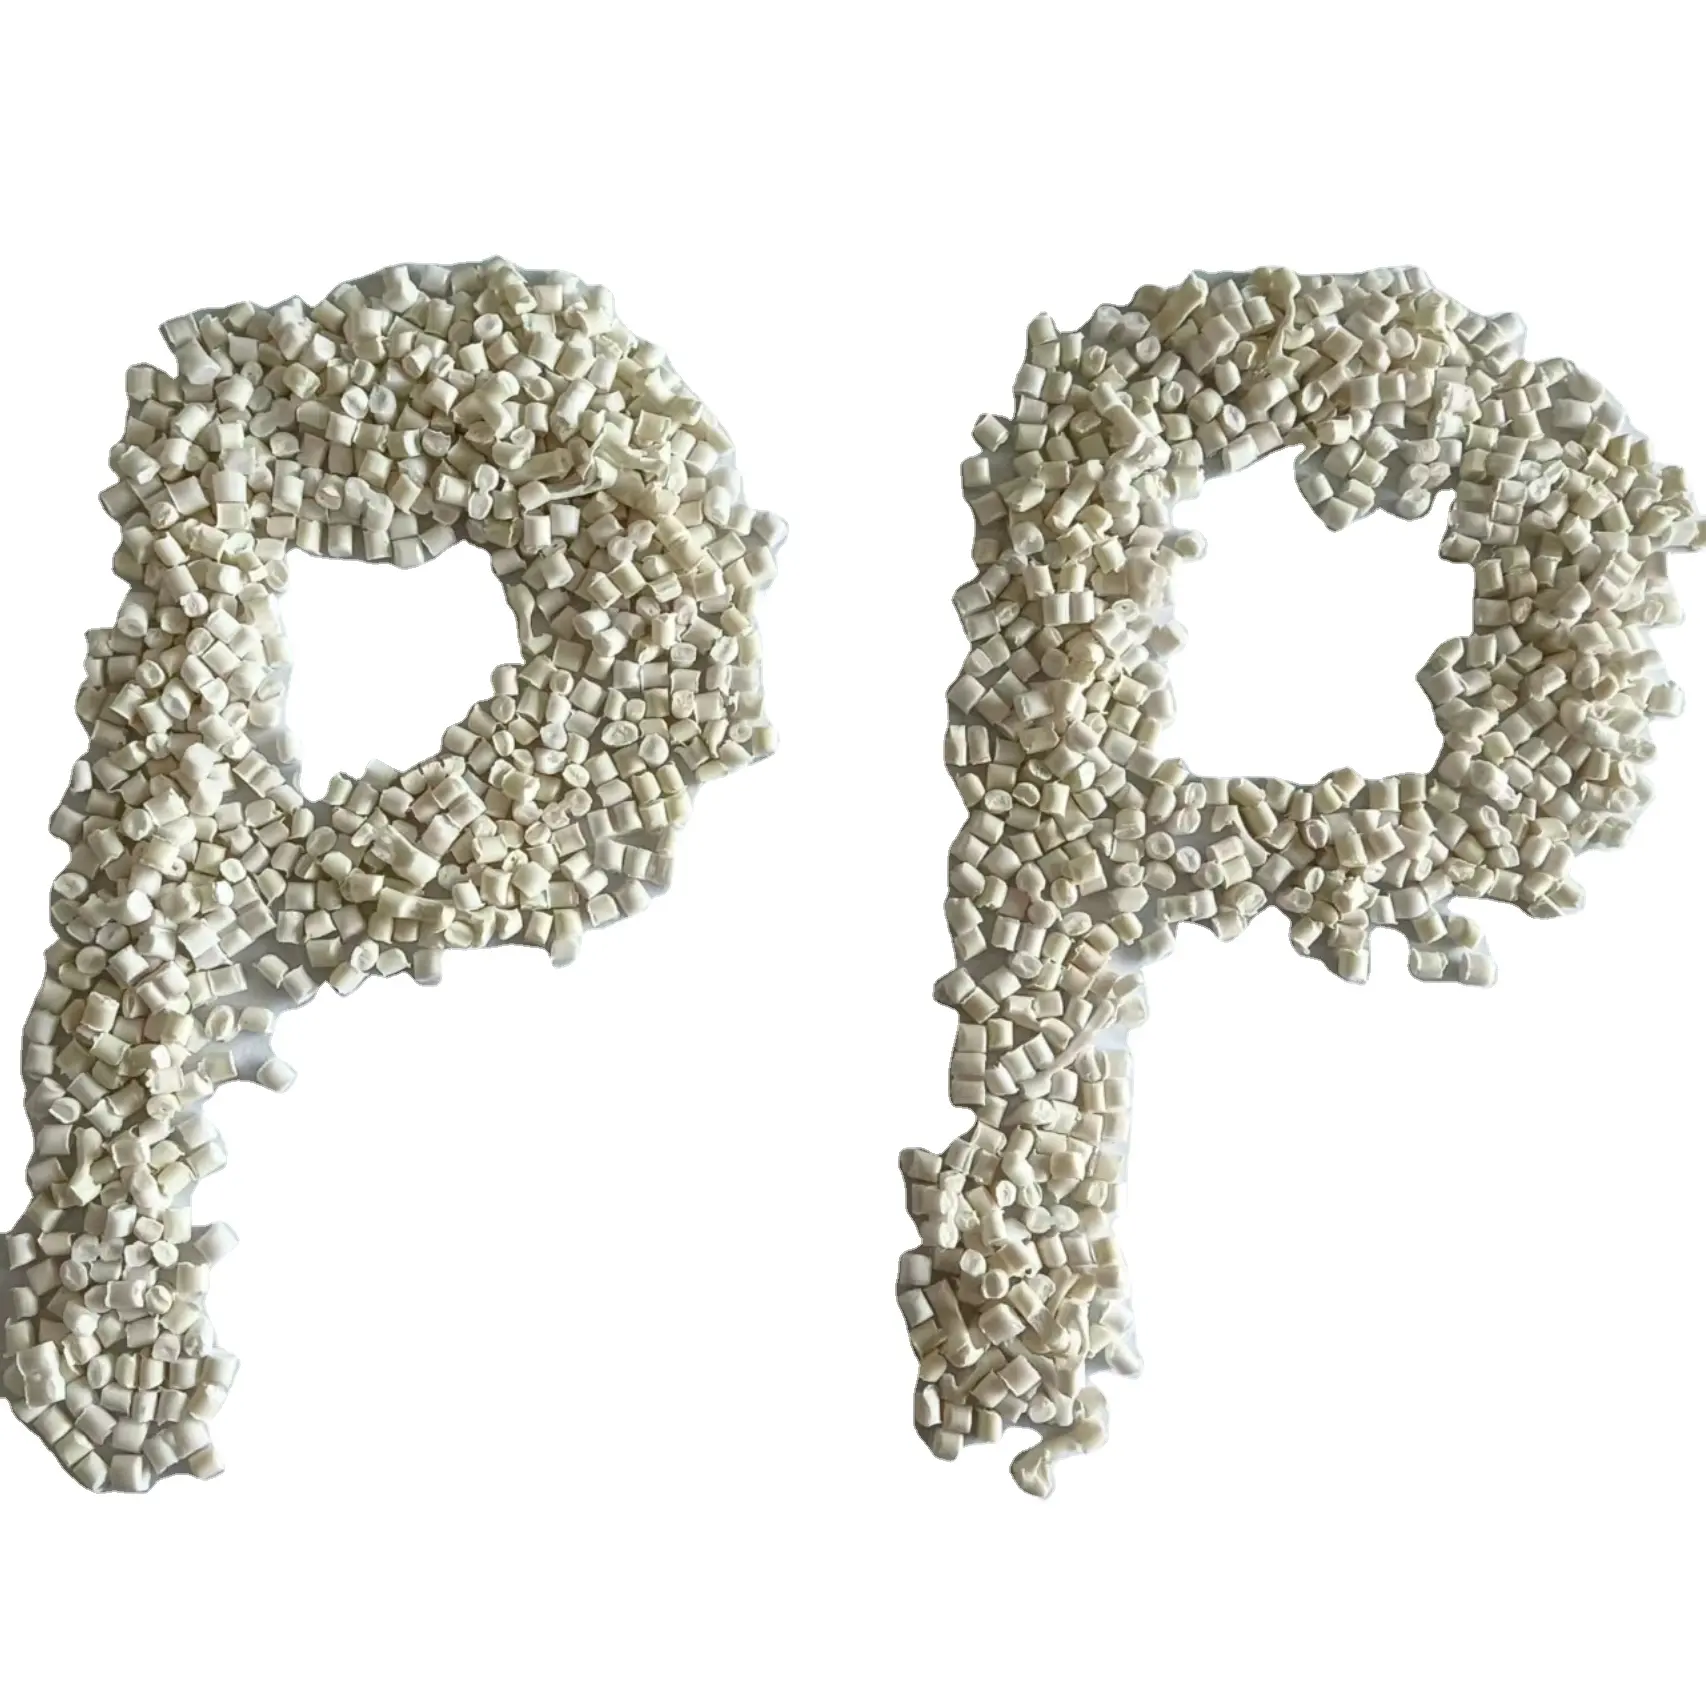 נמוך מחיר ממוחזר פלסטיק לבן pp גרגרי גלם פלסטיק חומר פולי פוליפרופילן PP חומרים Pp פלסטיק